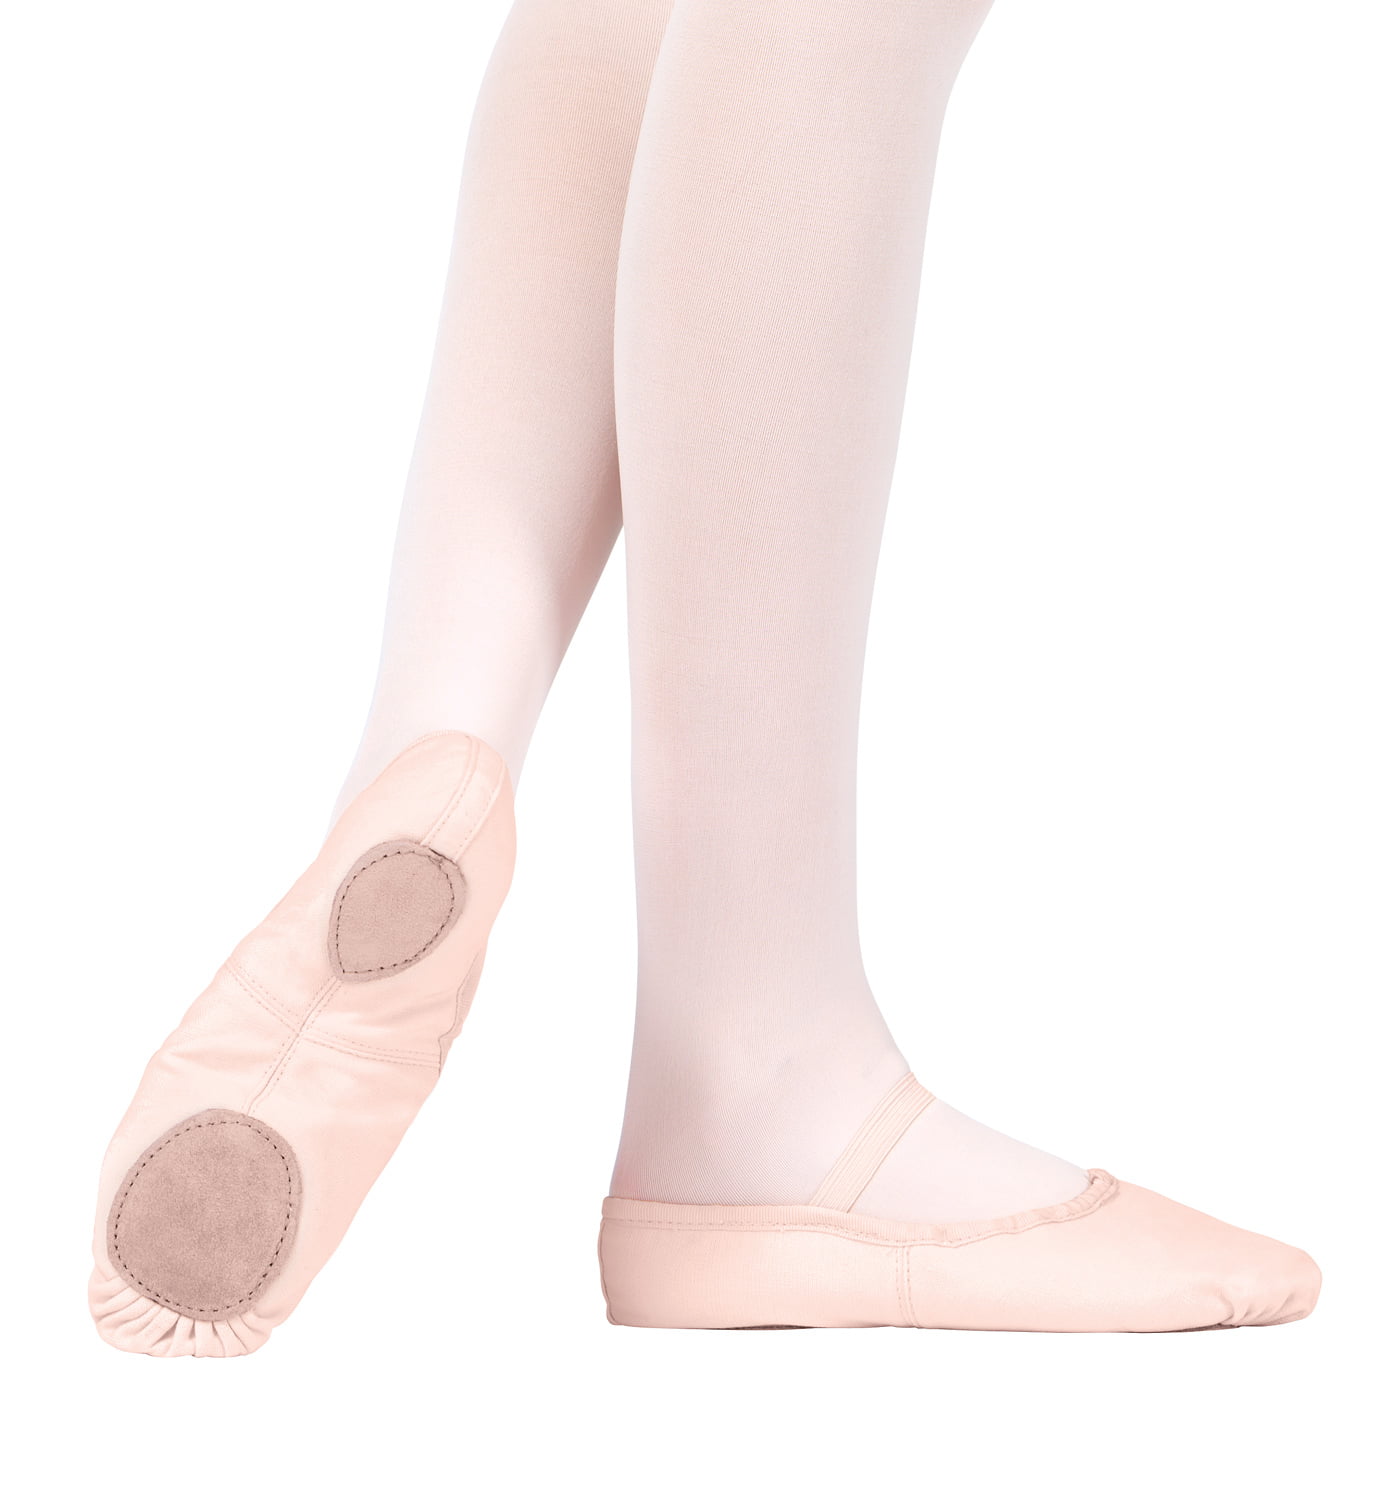 Children Adult Canvas Split Sole Ballet Dance Shoes Pointe Slippers Size 22-45 